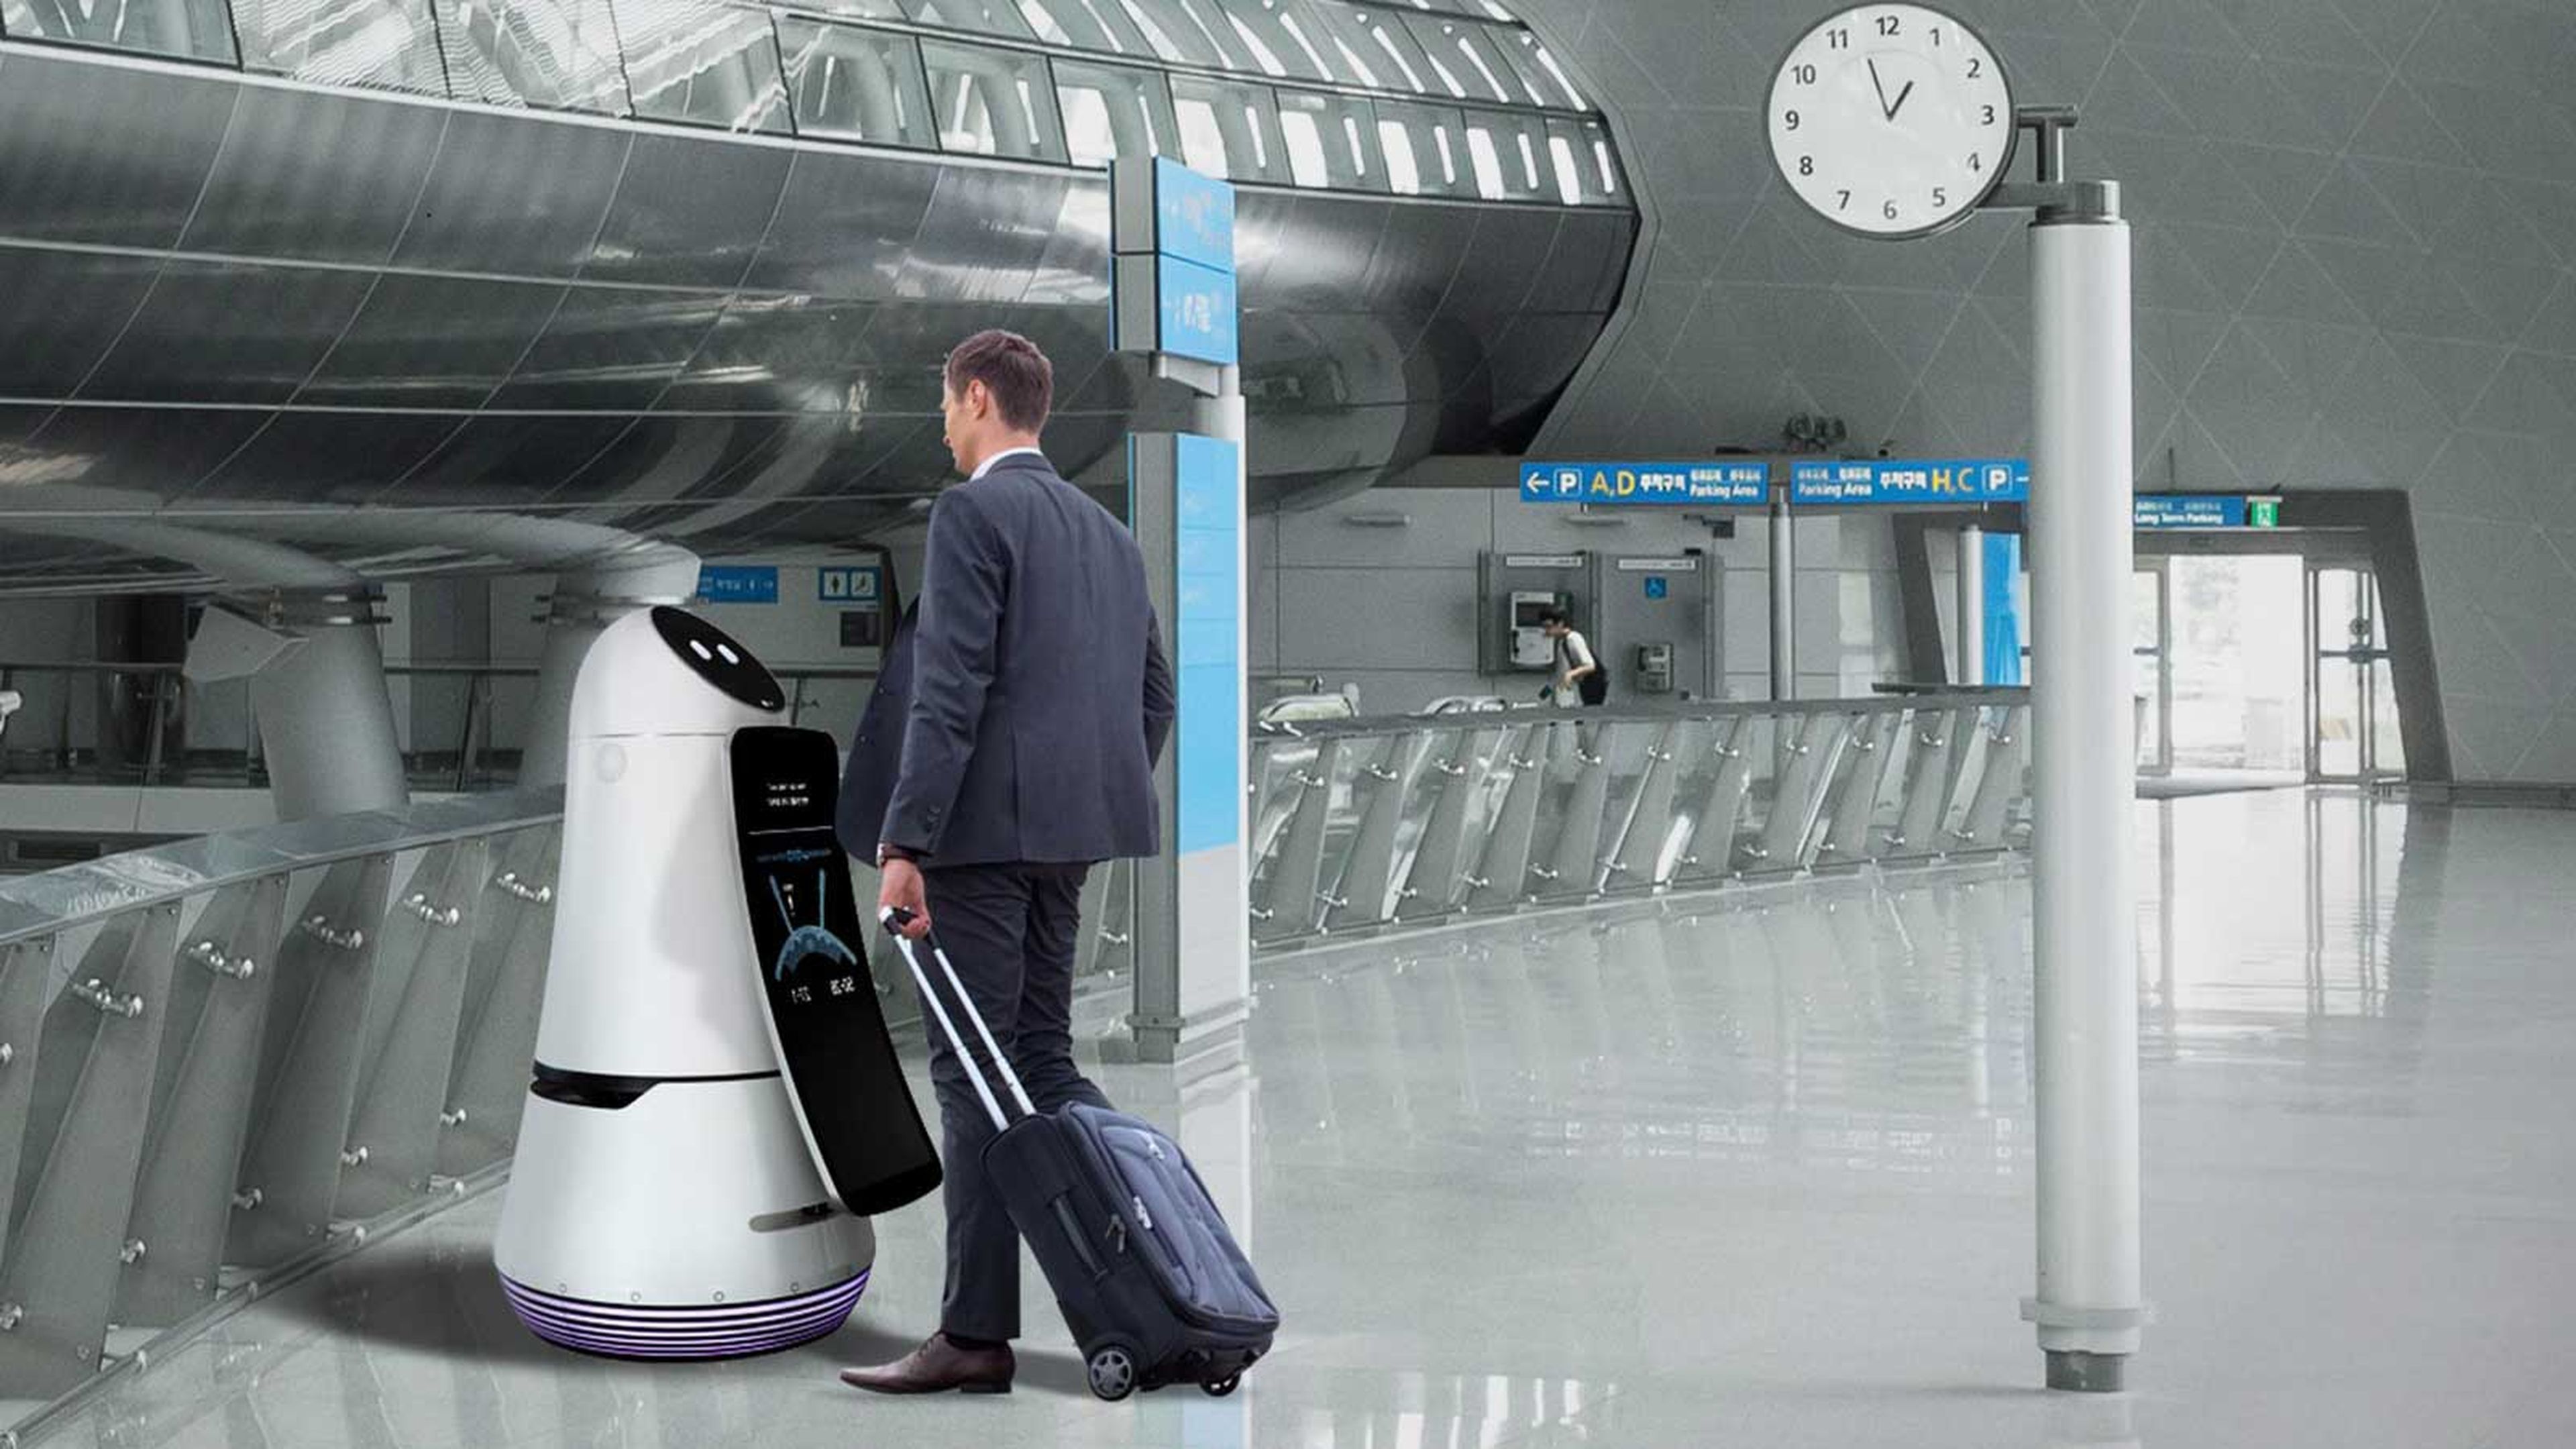 LG ultima su flota de robots para el aeropuerto de Seúl